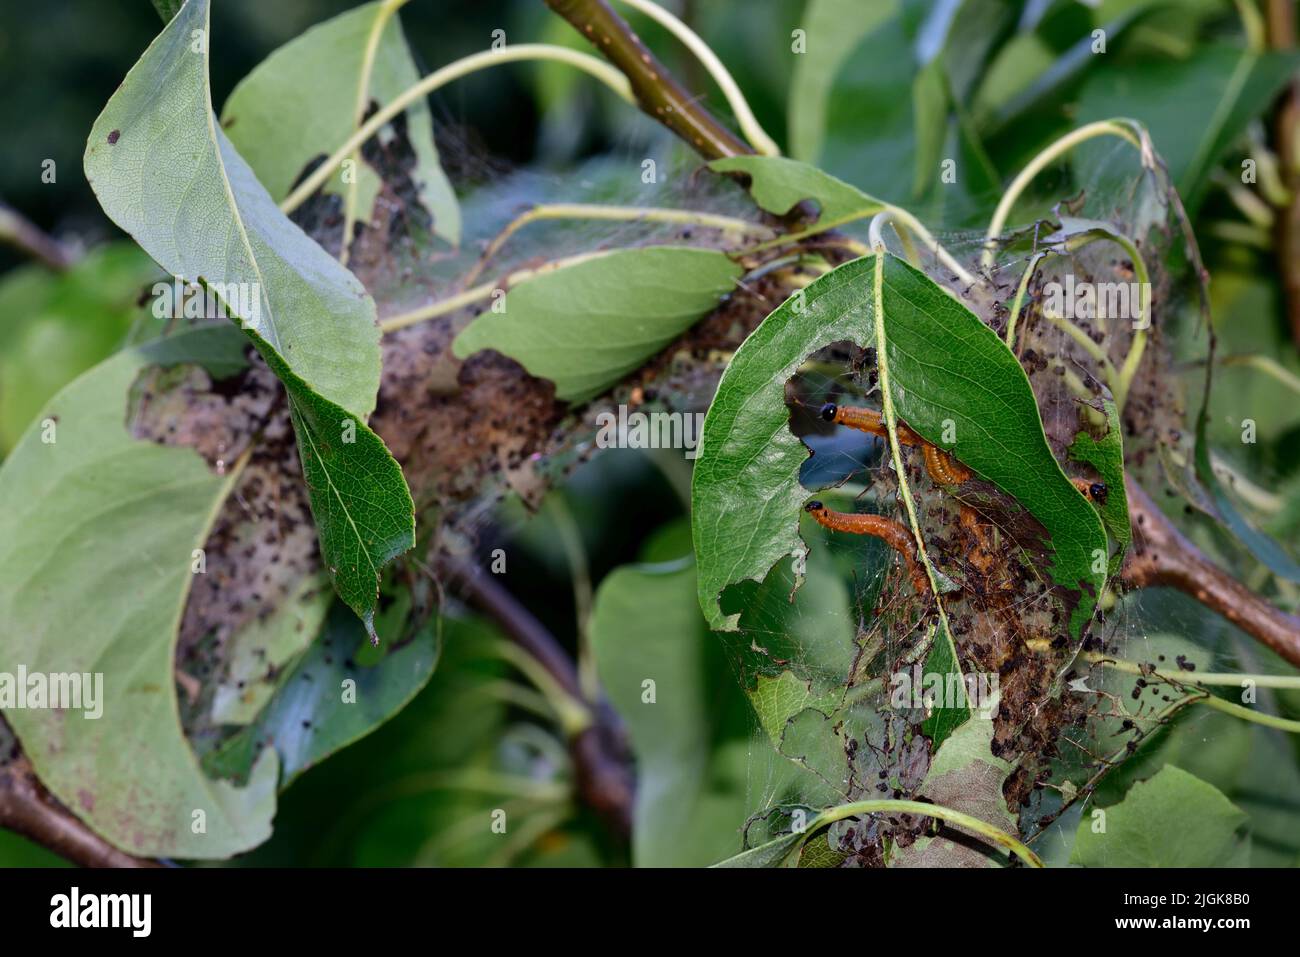 Social Pear Sägeflügelraupen (Larven), Neurotoma saltuum, mit orangefarbenen Körpern schwarze Köpfe, die sich auf einem Blatt Birnenbaum mit einem Teil ihres Webvisibls ernähren Stockfoto